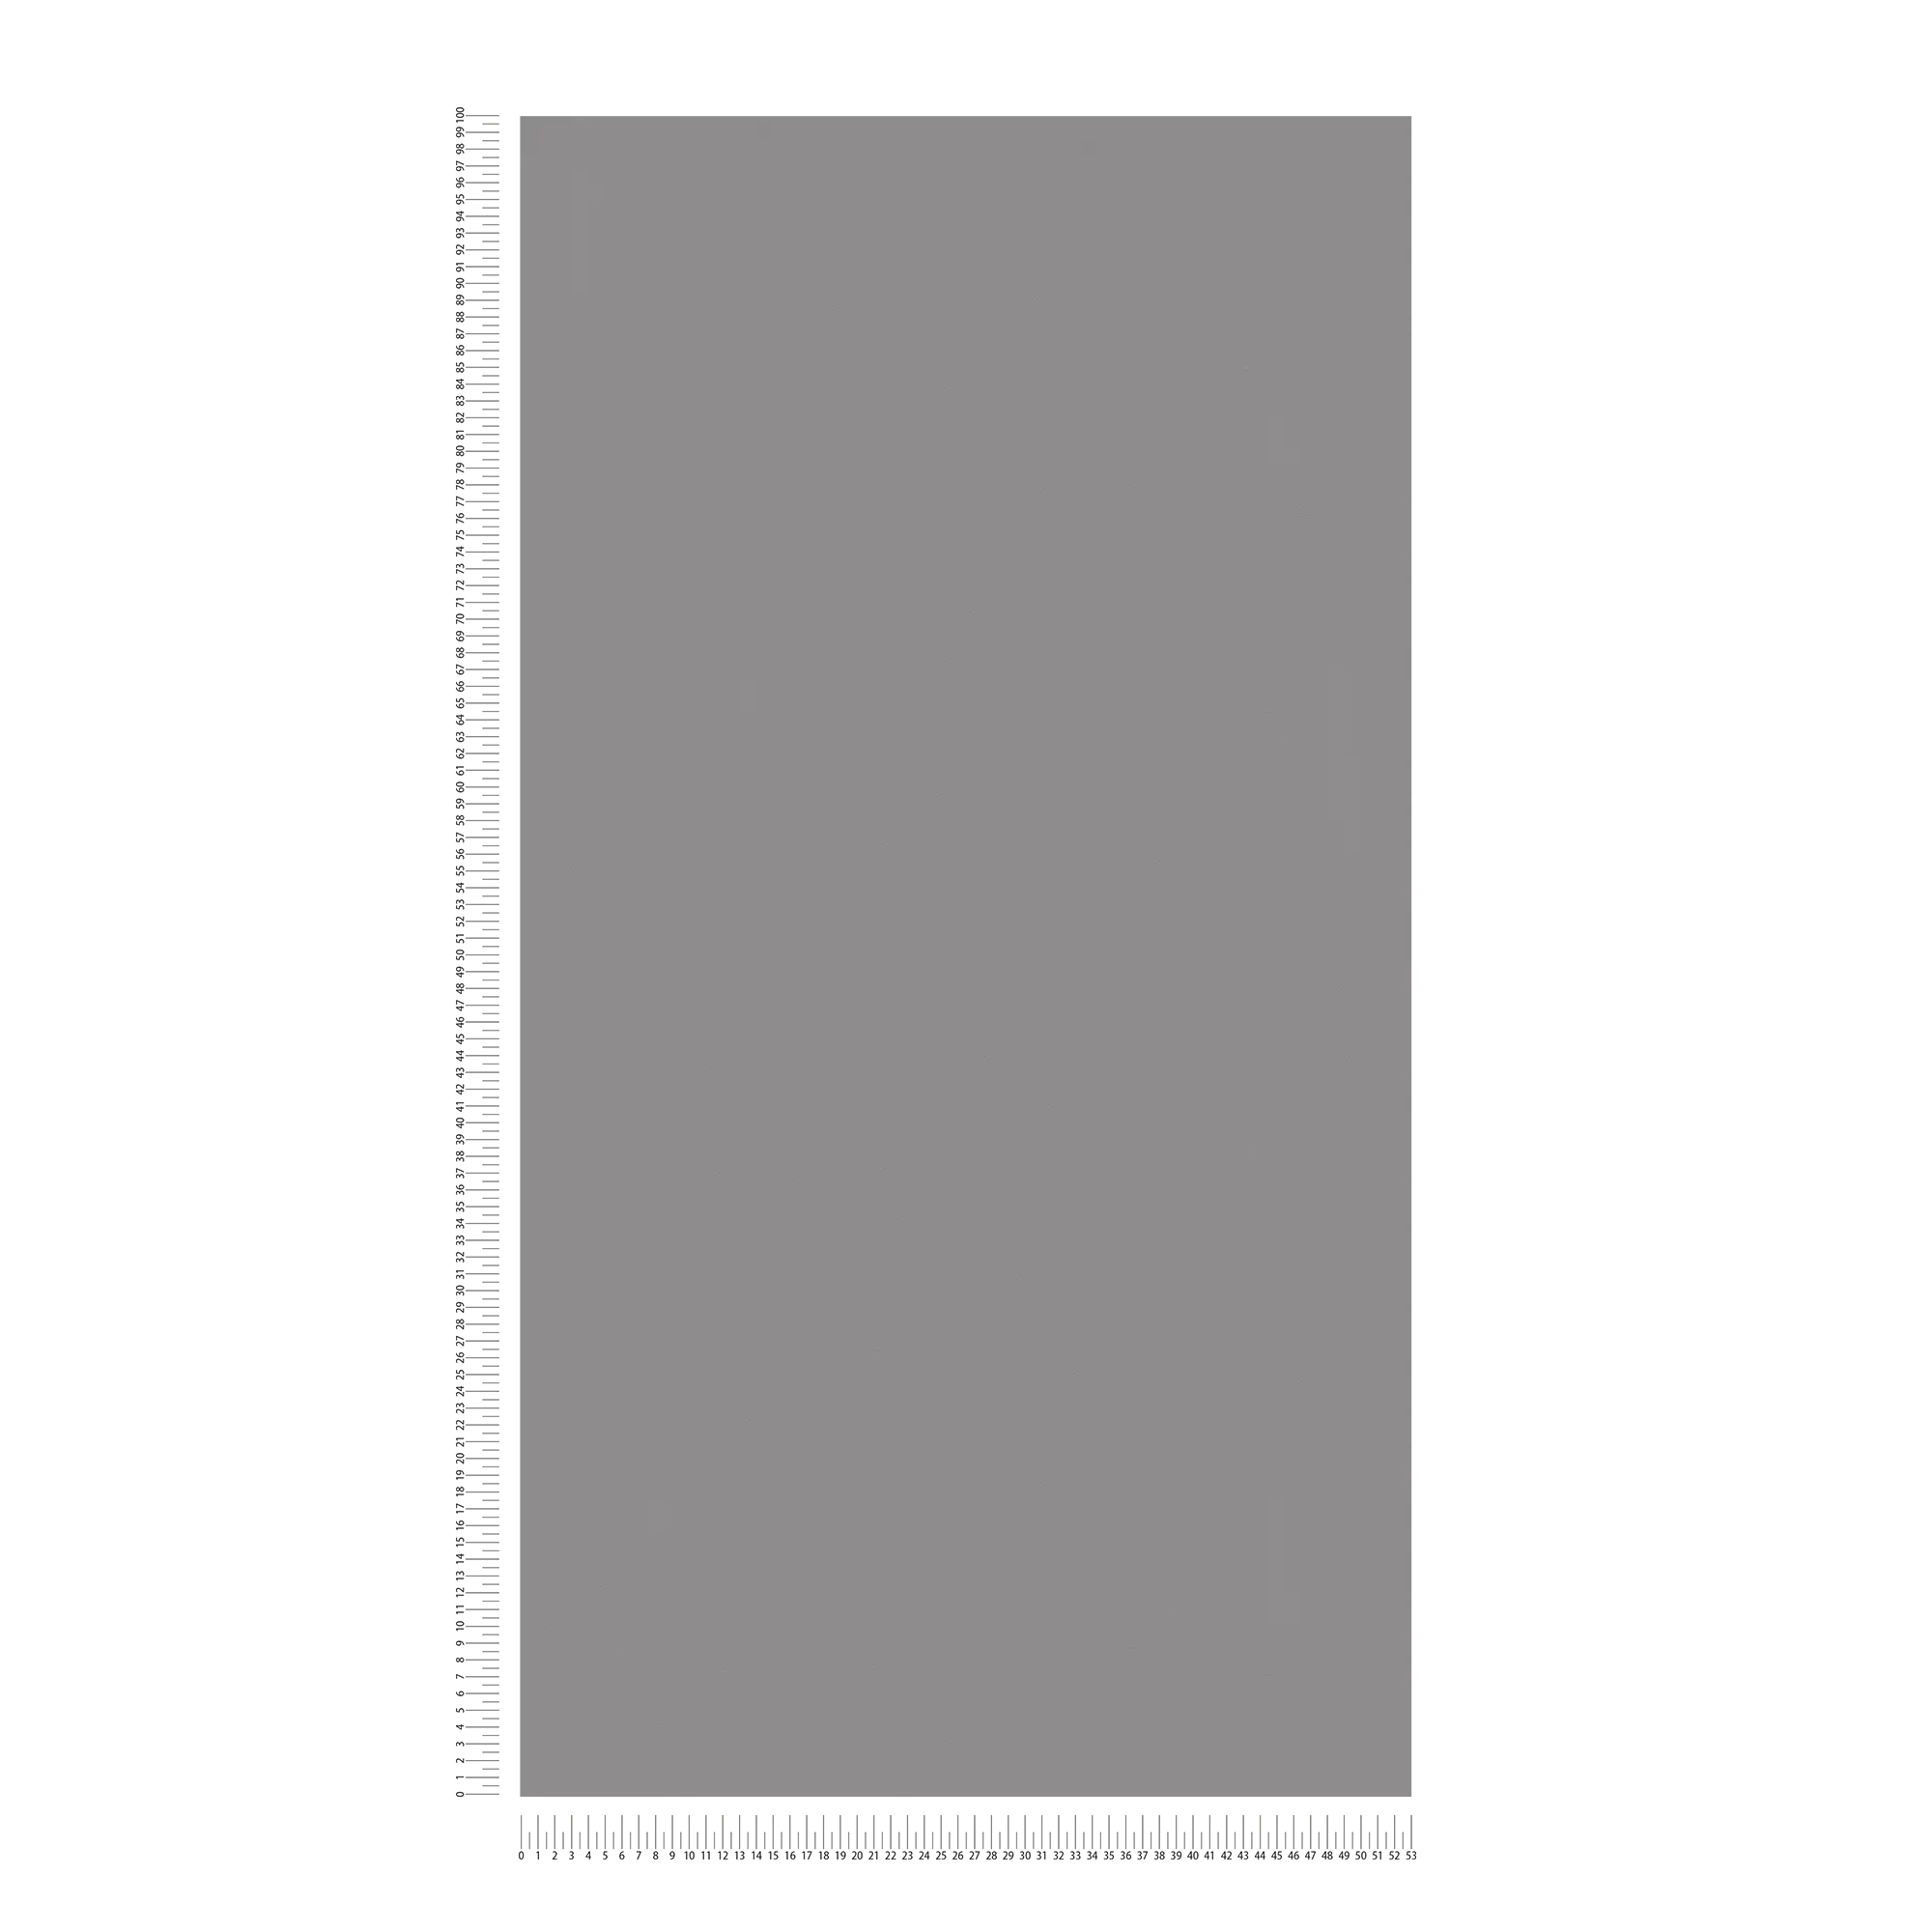             Carta da parati in tessuto non tessuto grigio tinta unita con struttura piatta e superficie opaca
        